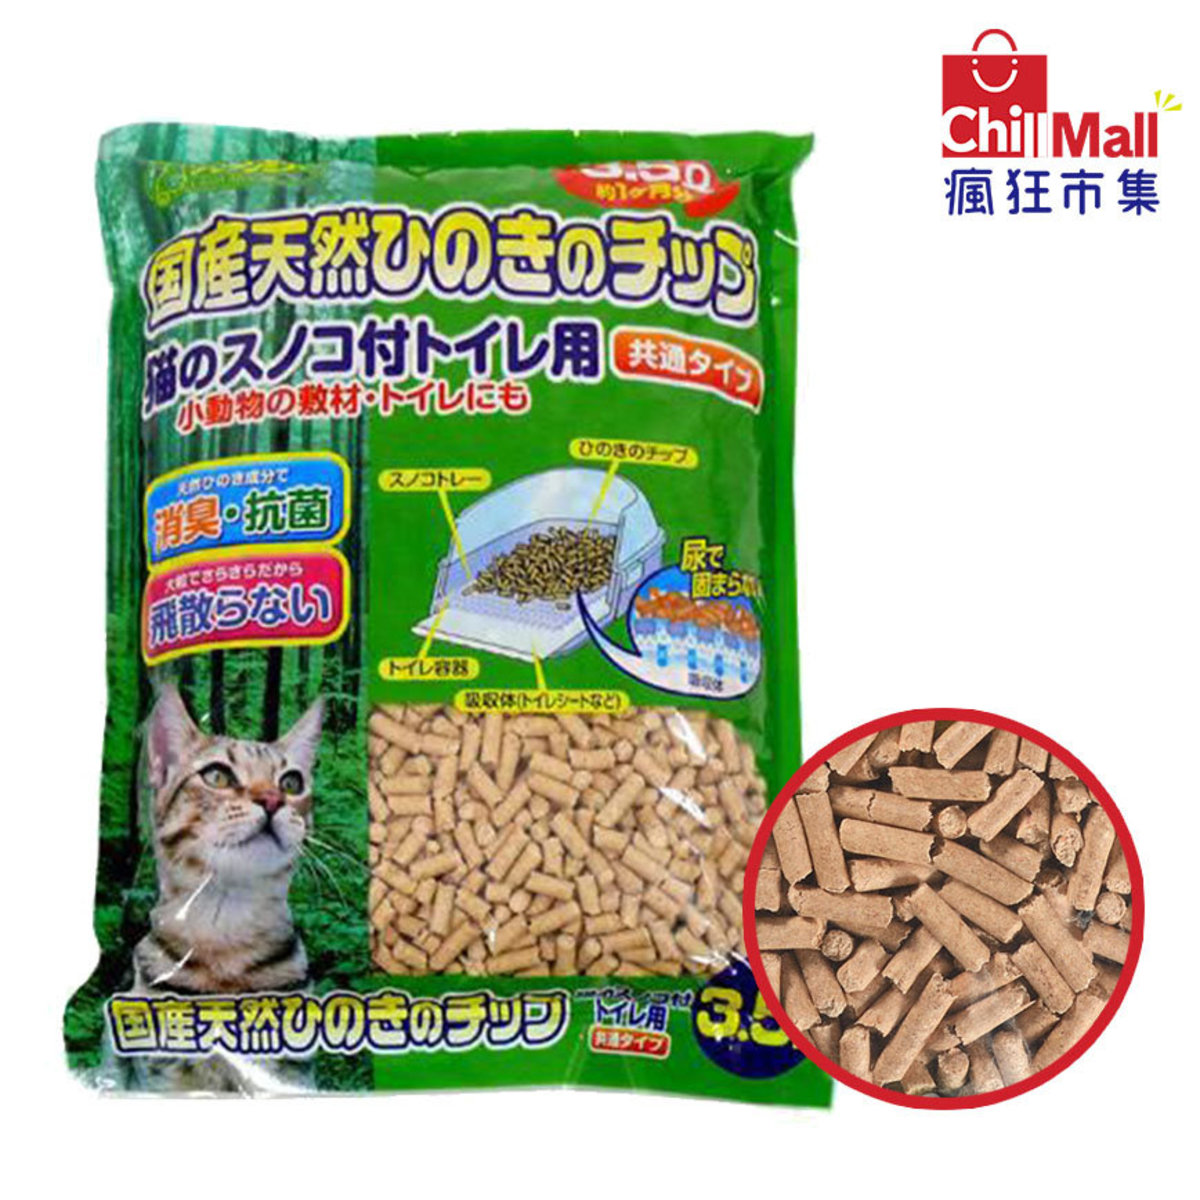 Japan Clean Mew Penetrative, Flushable Cat Litter (3.5L) 8205332